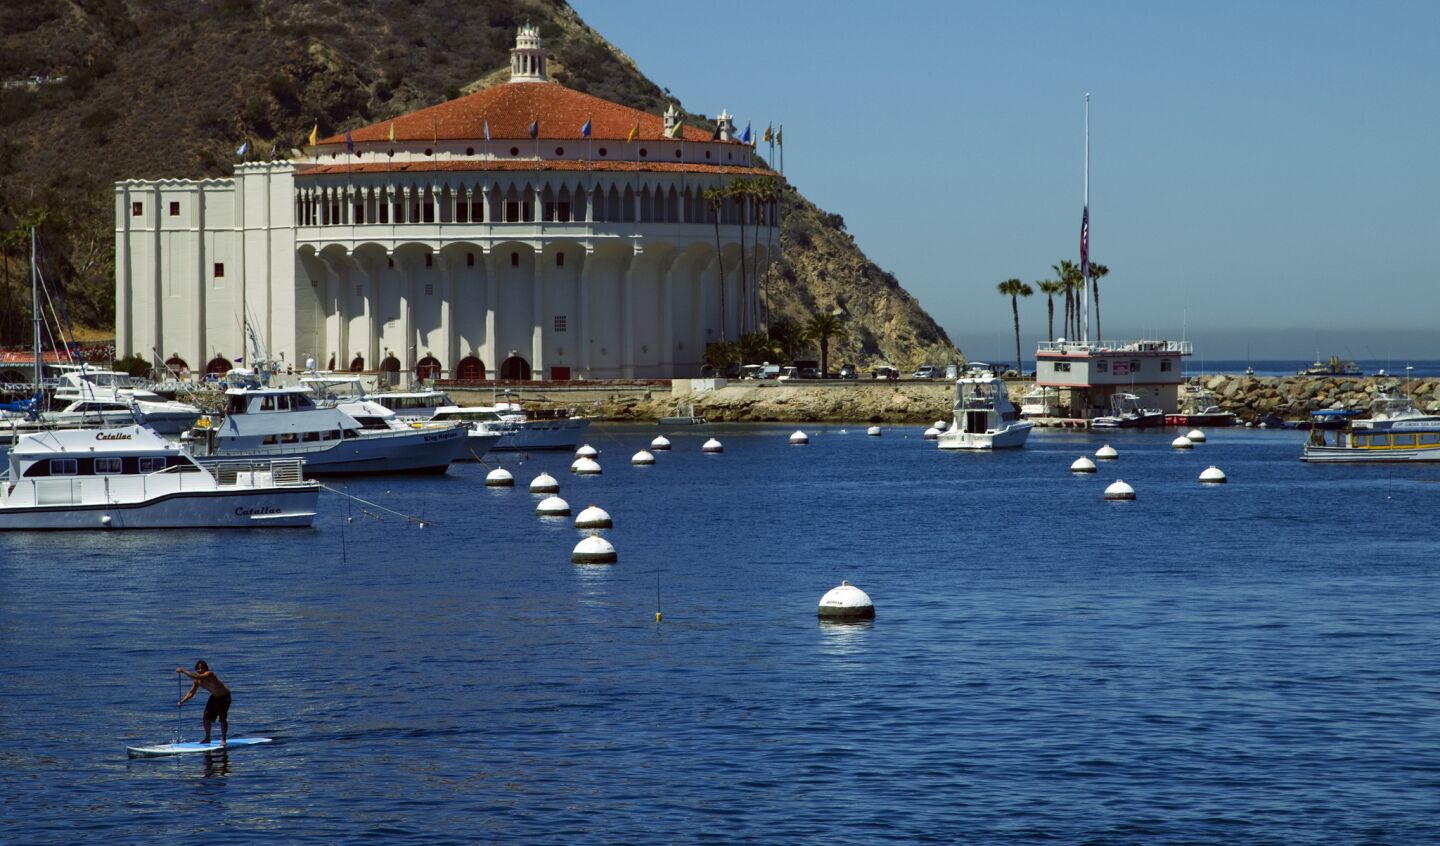 Catalina Island's Avalon Casino